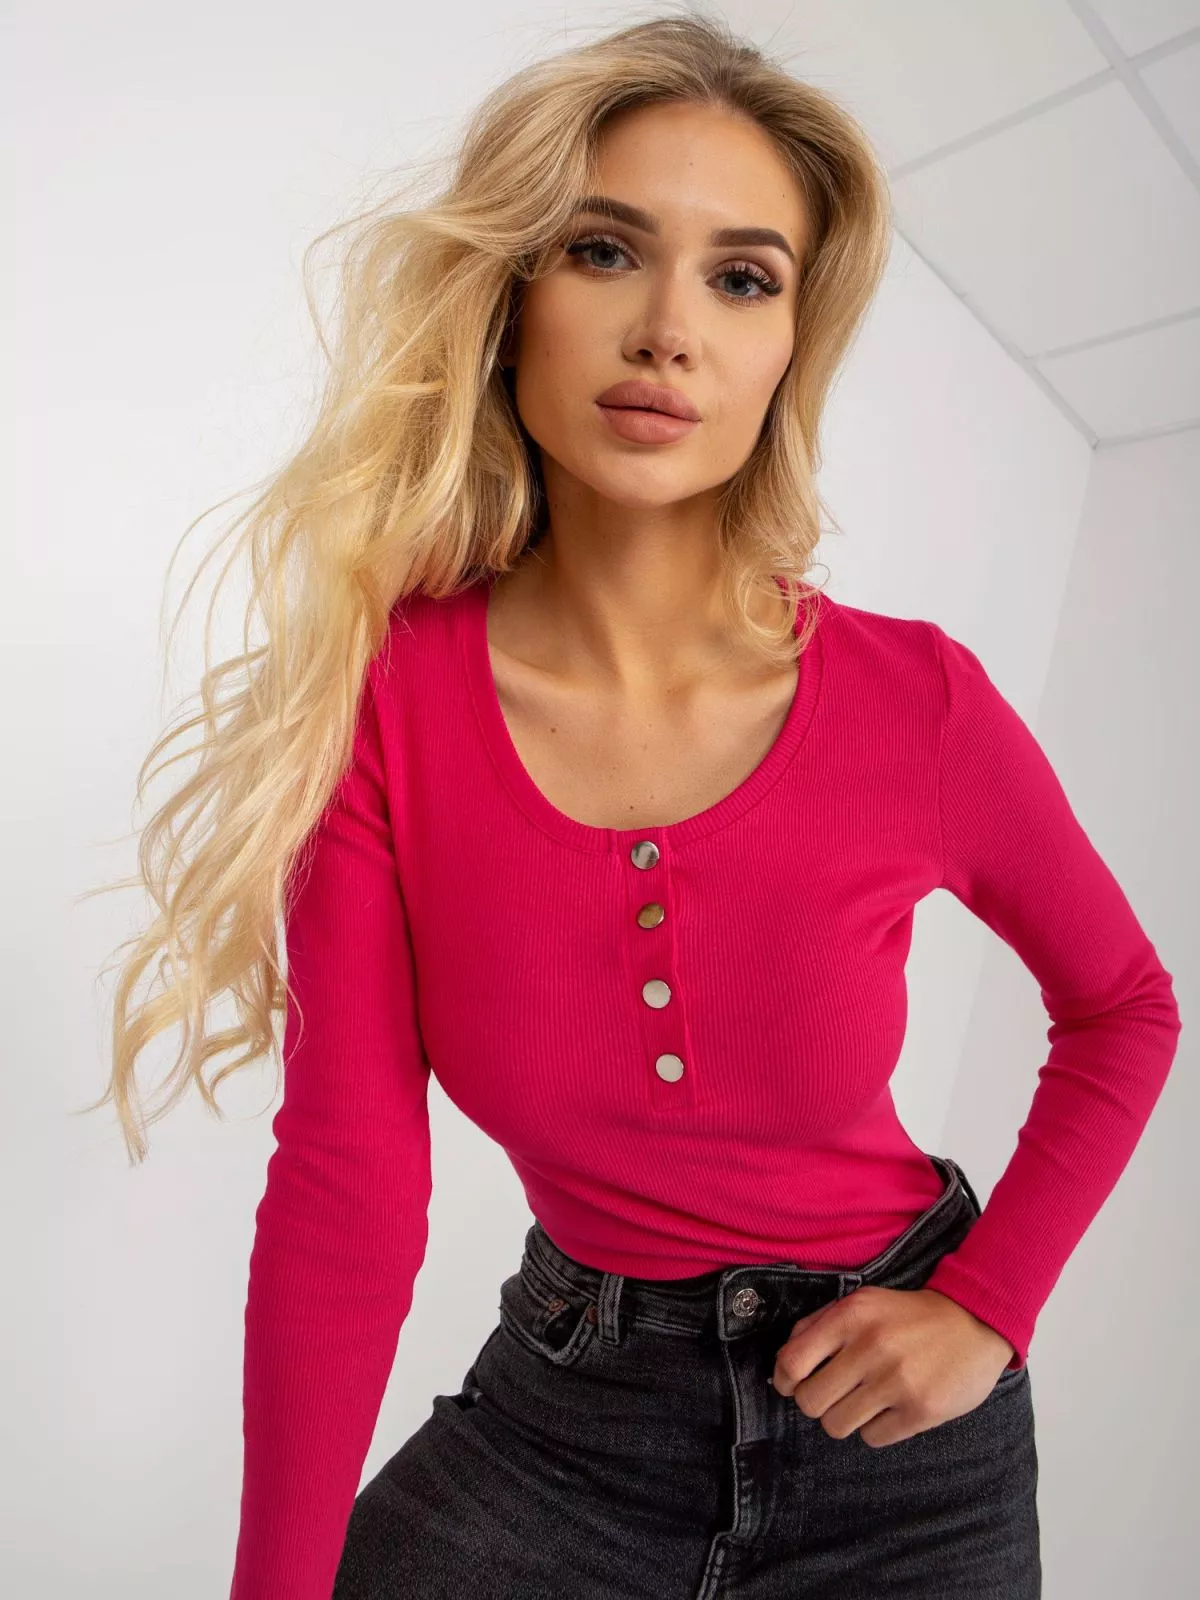 Bluza dama cu maneca lunga roz - bluze